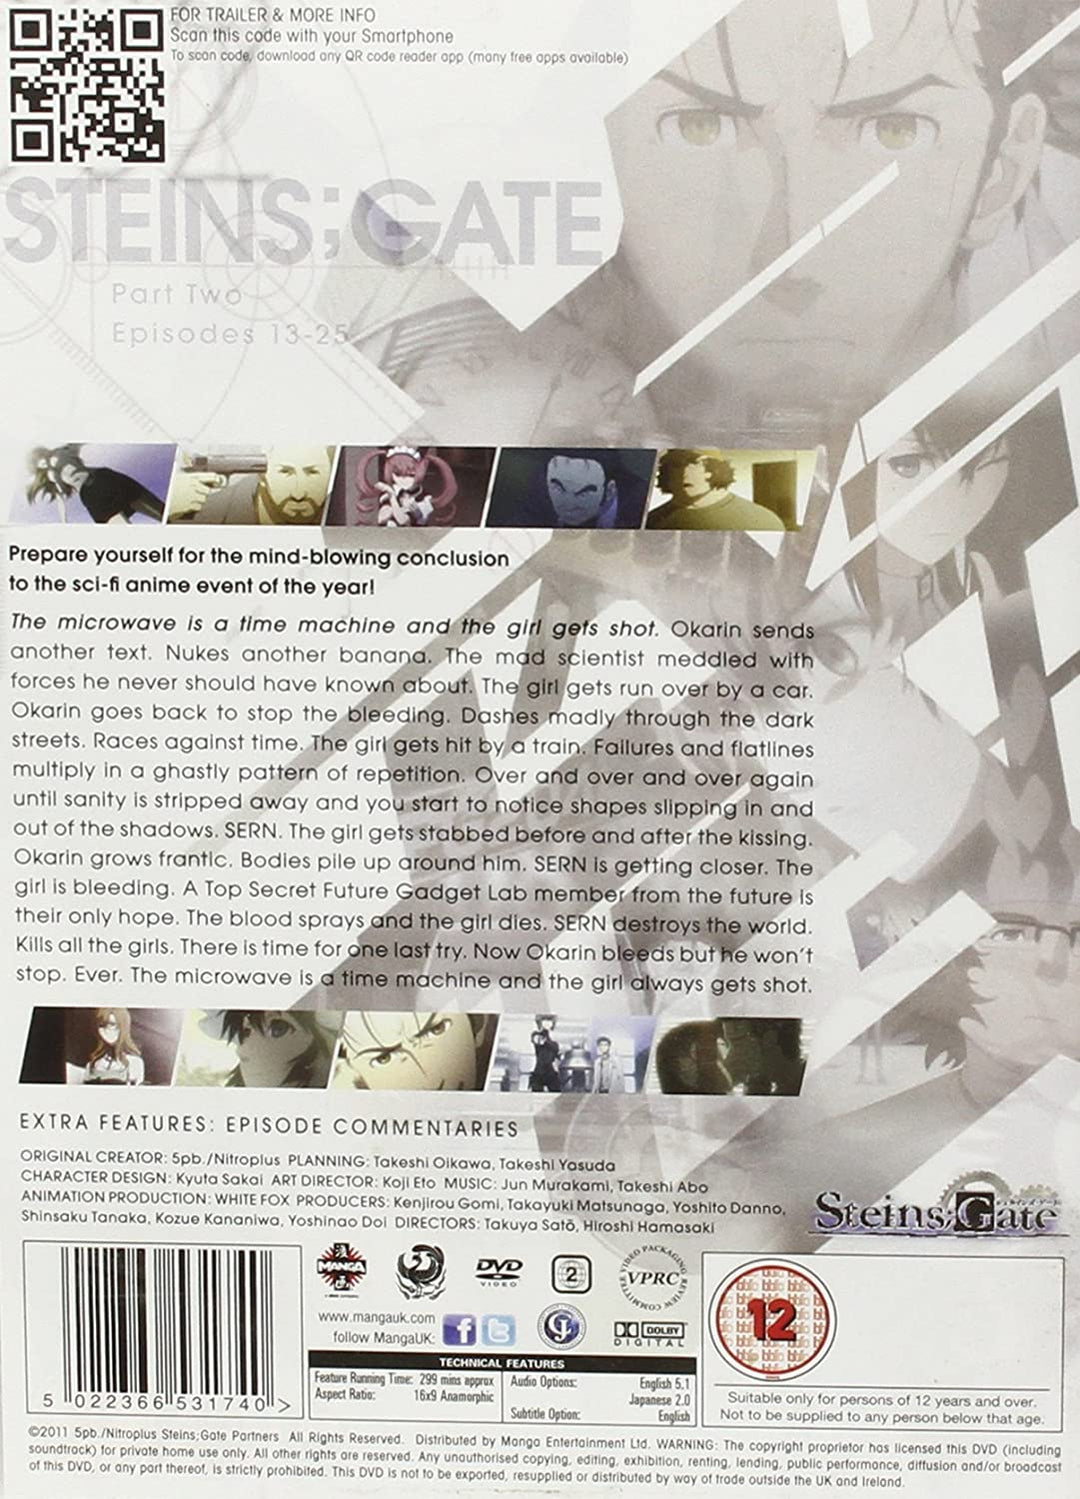 Steins Gate Part 2 (Episodes 13-25) [DVD]